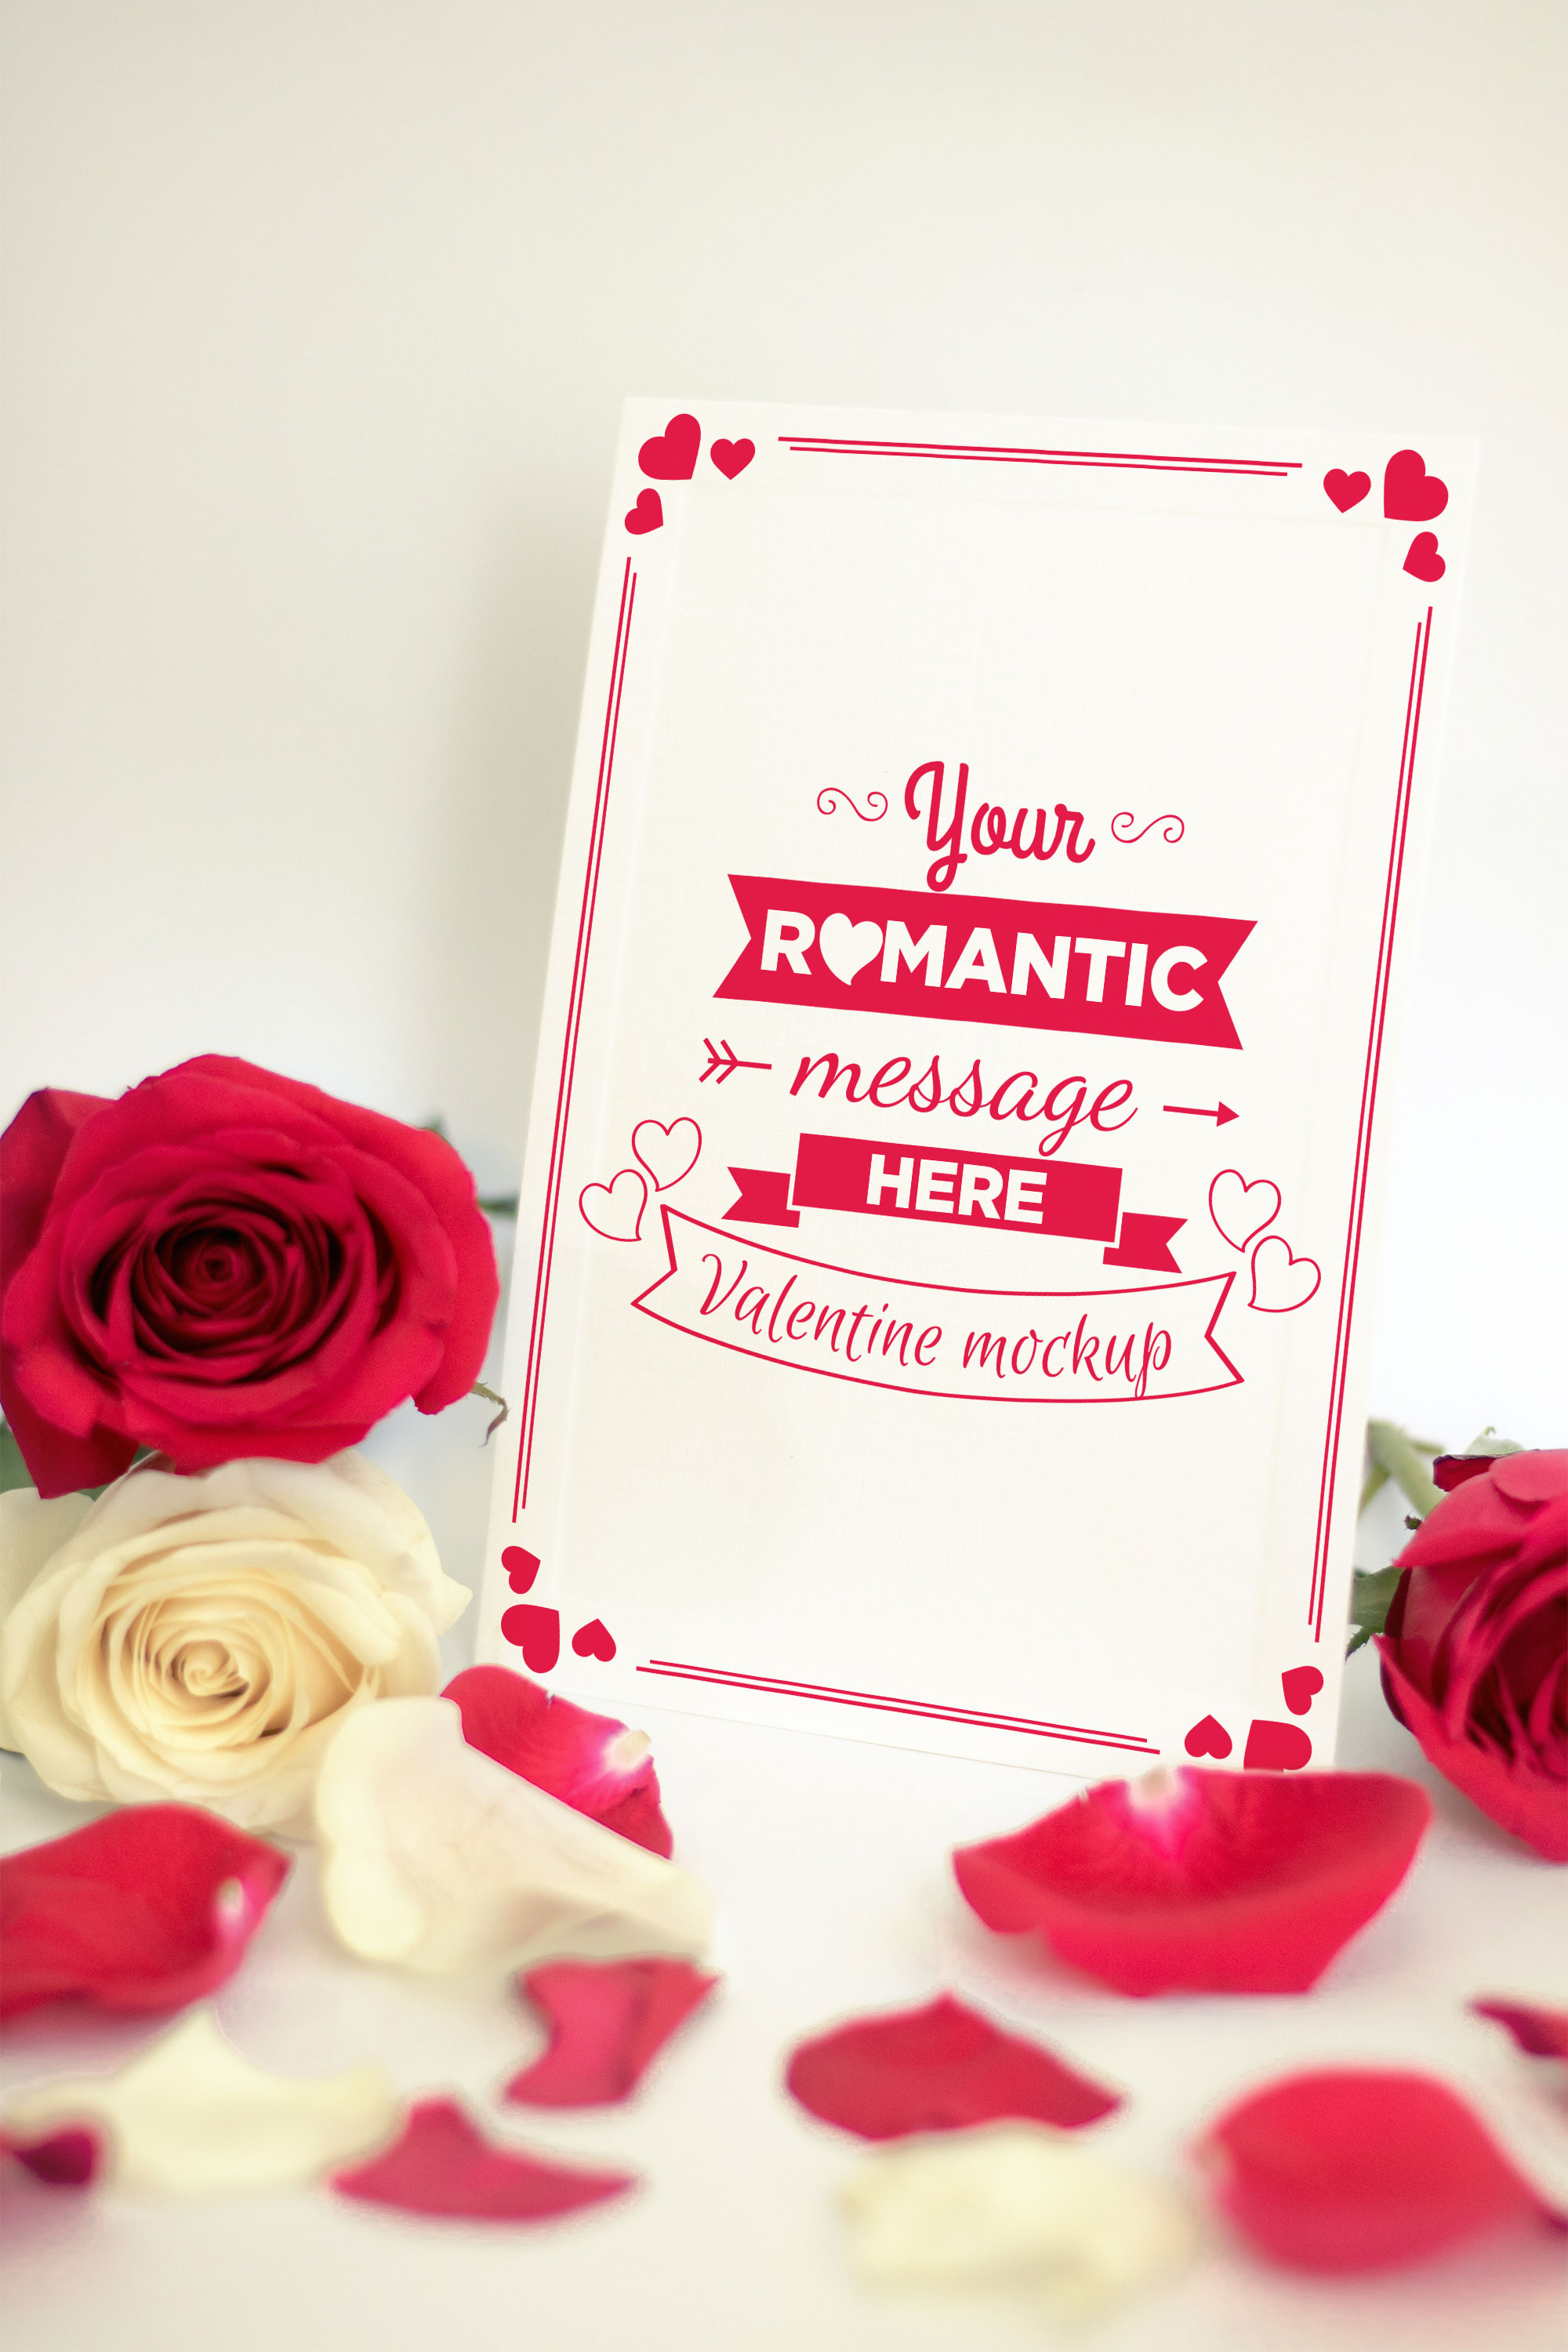 情人节贺卡设计样机模板 Valentine Card Mockup 06插图(1)